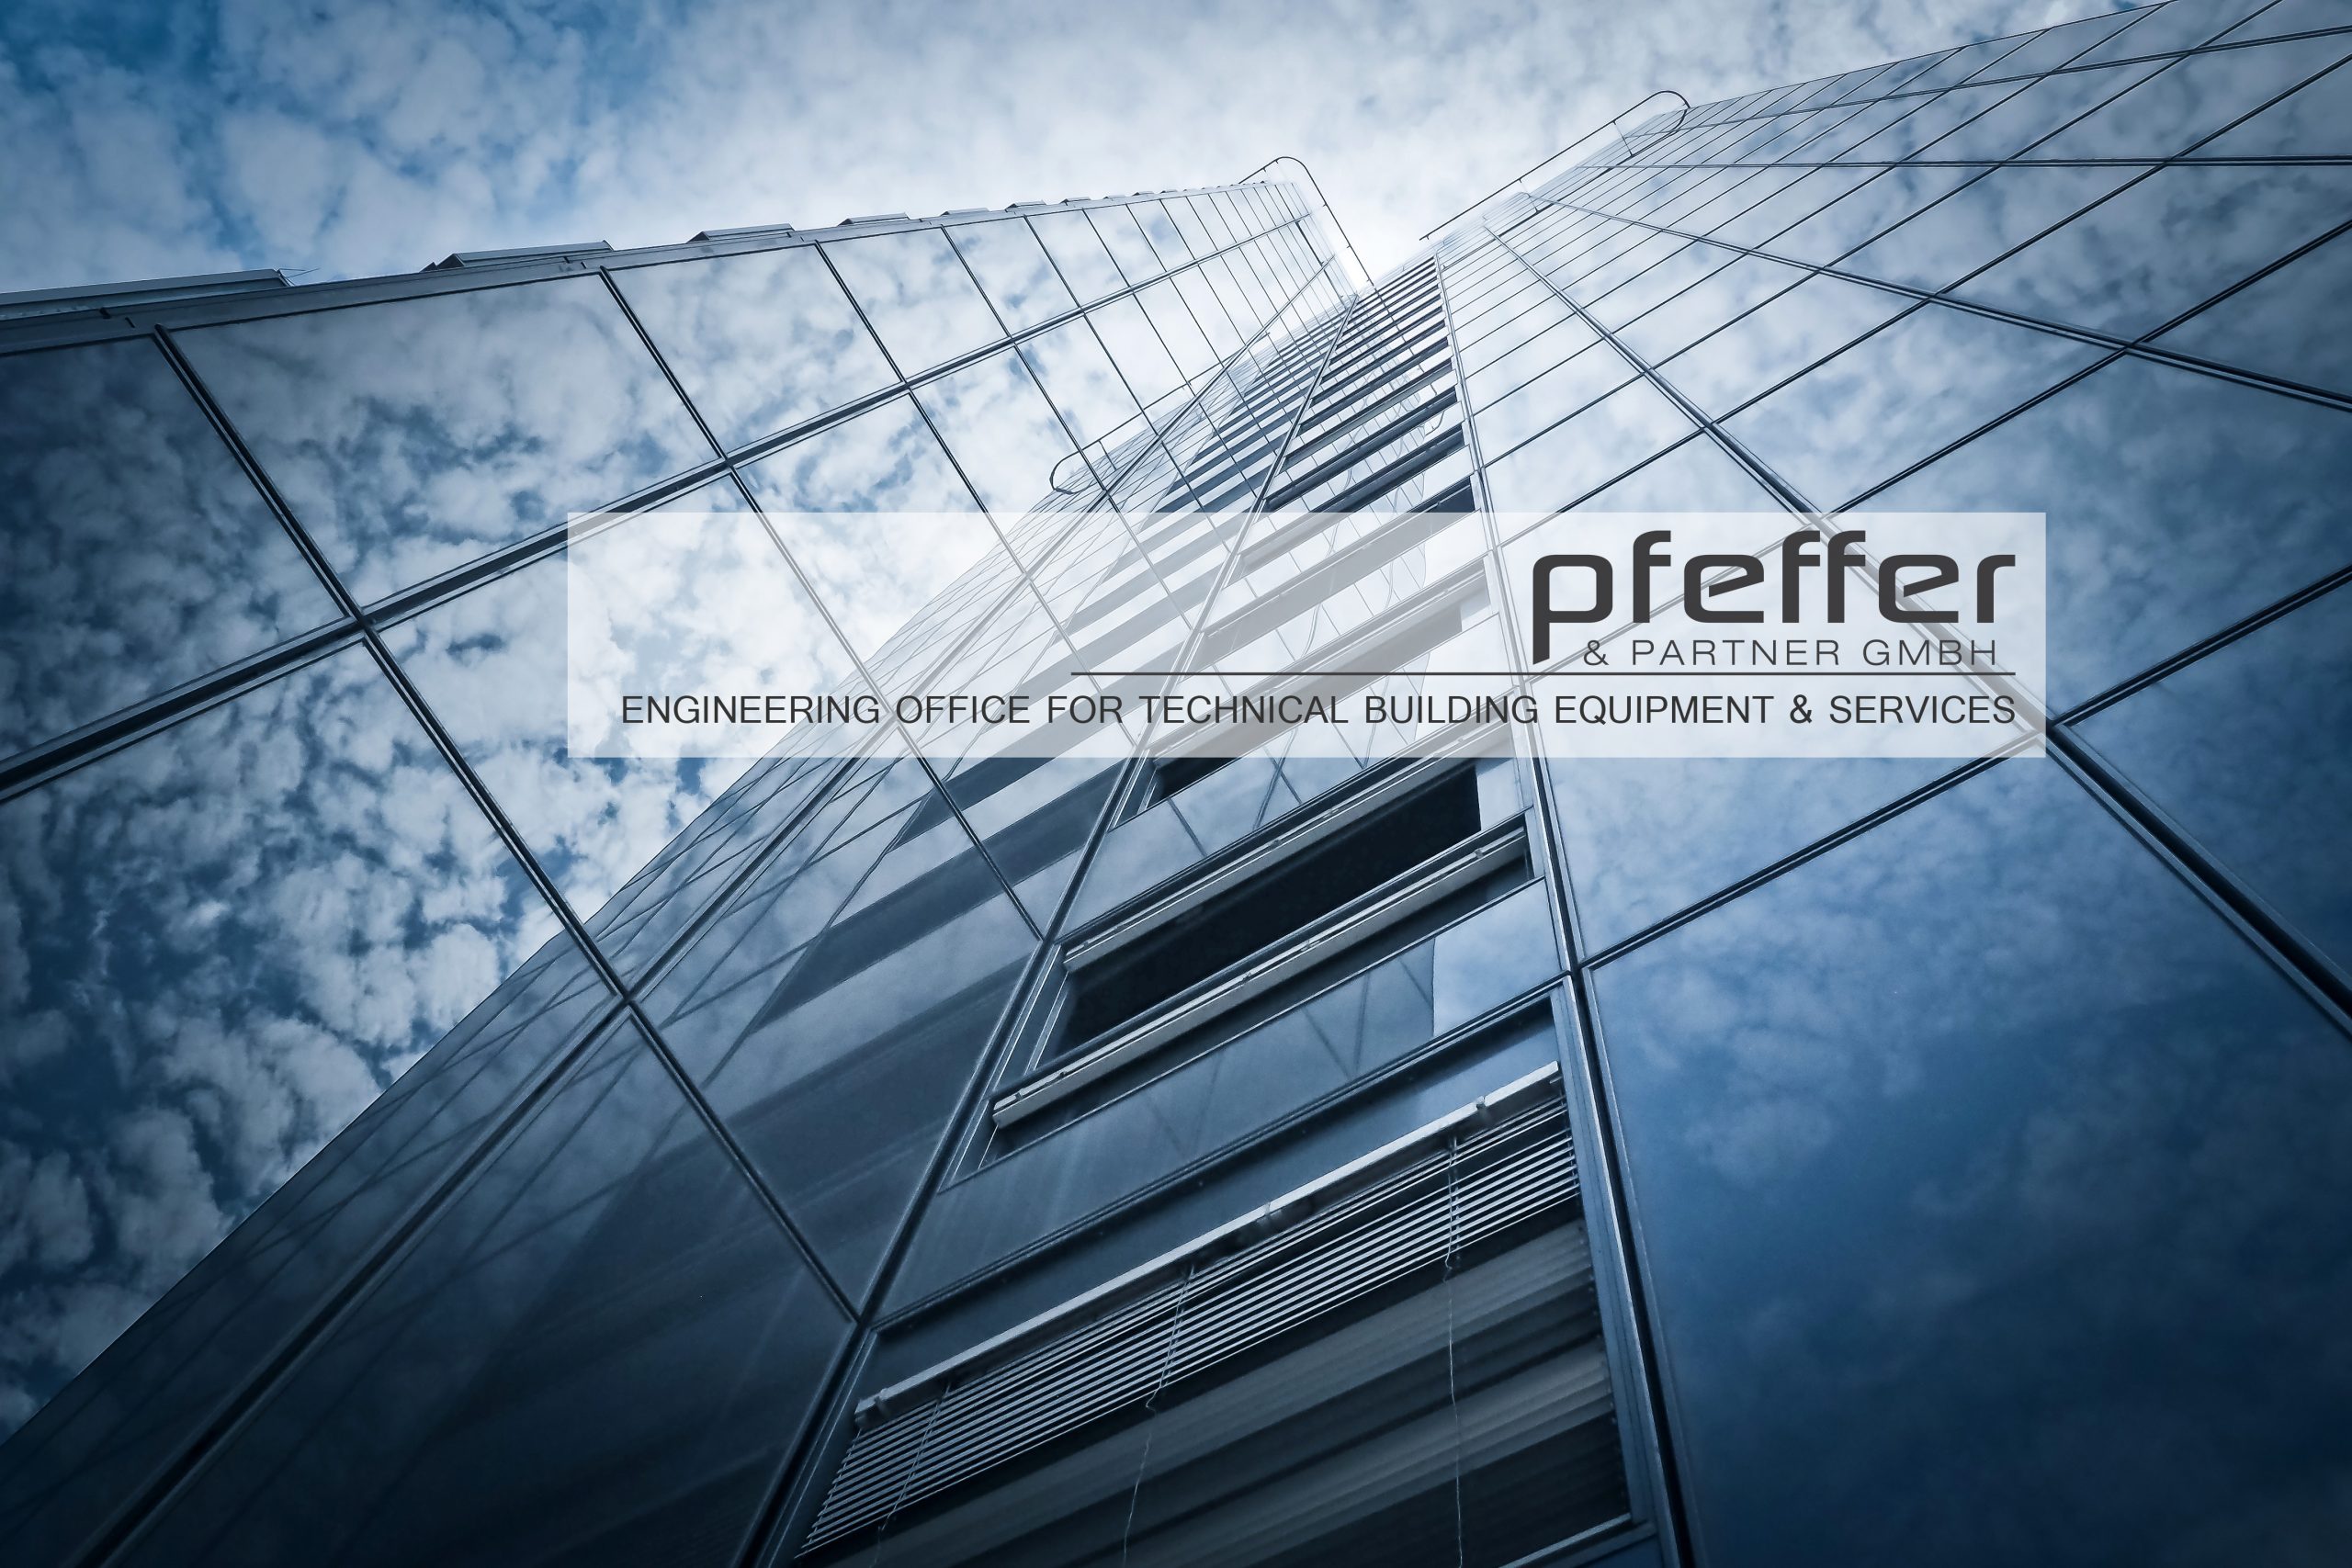 Pfeffer & Partner GmbH